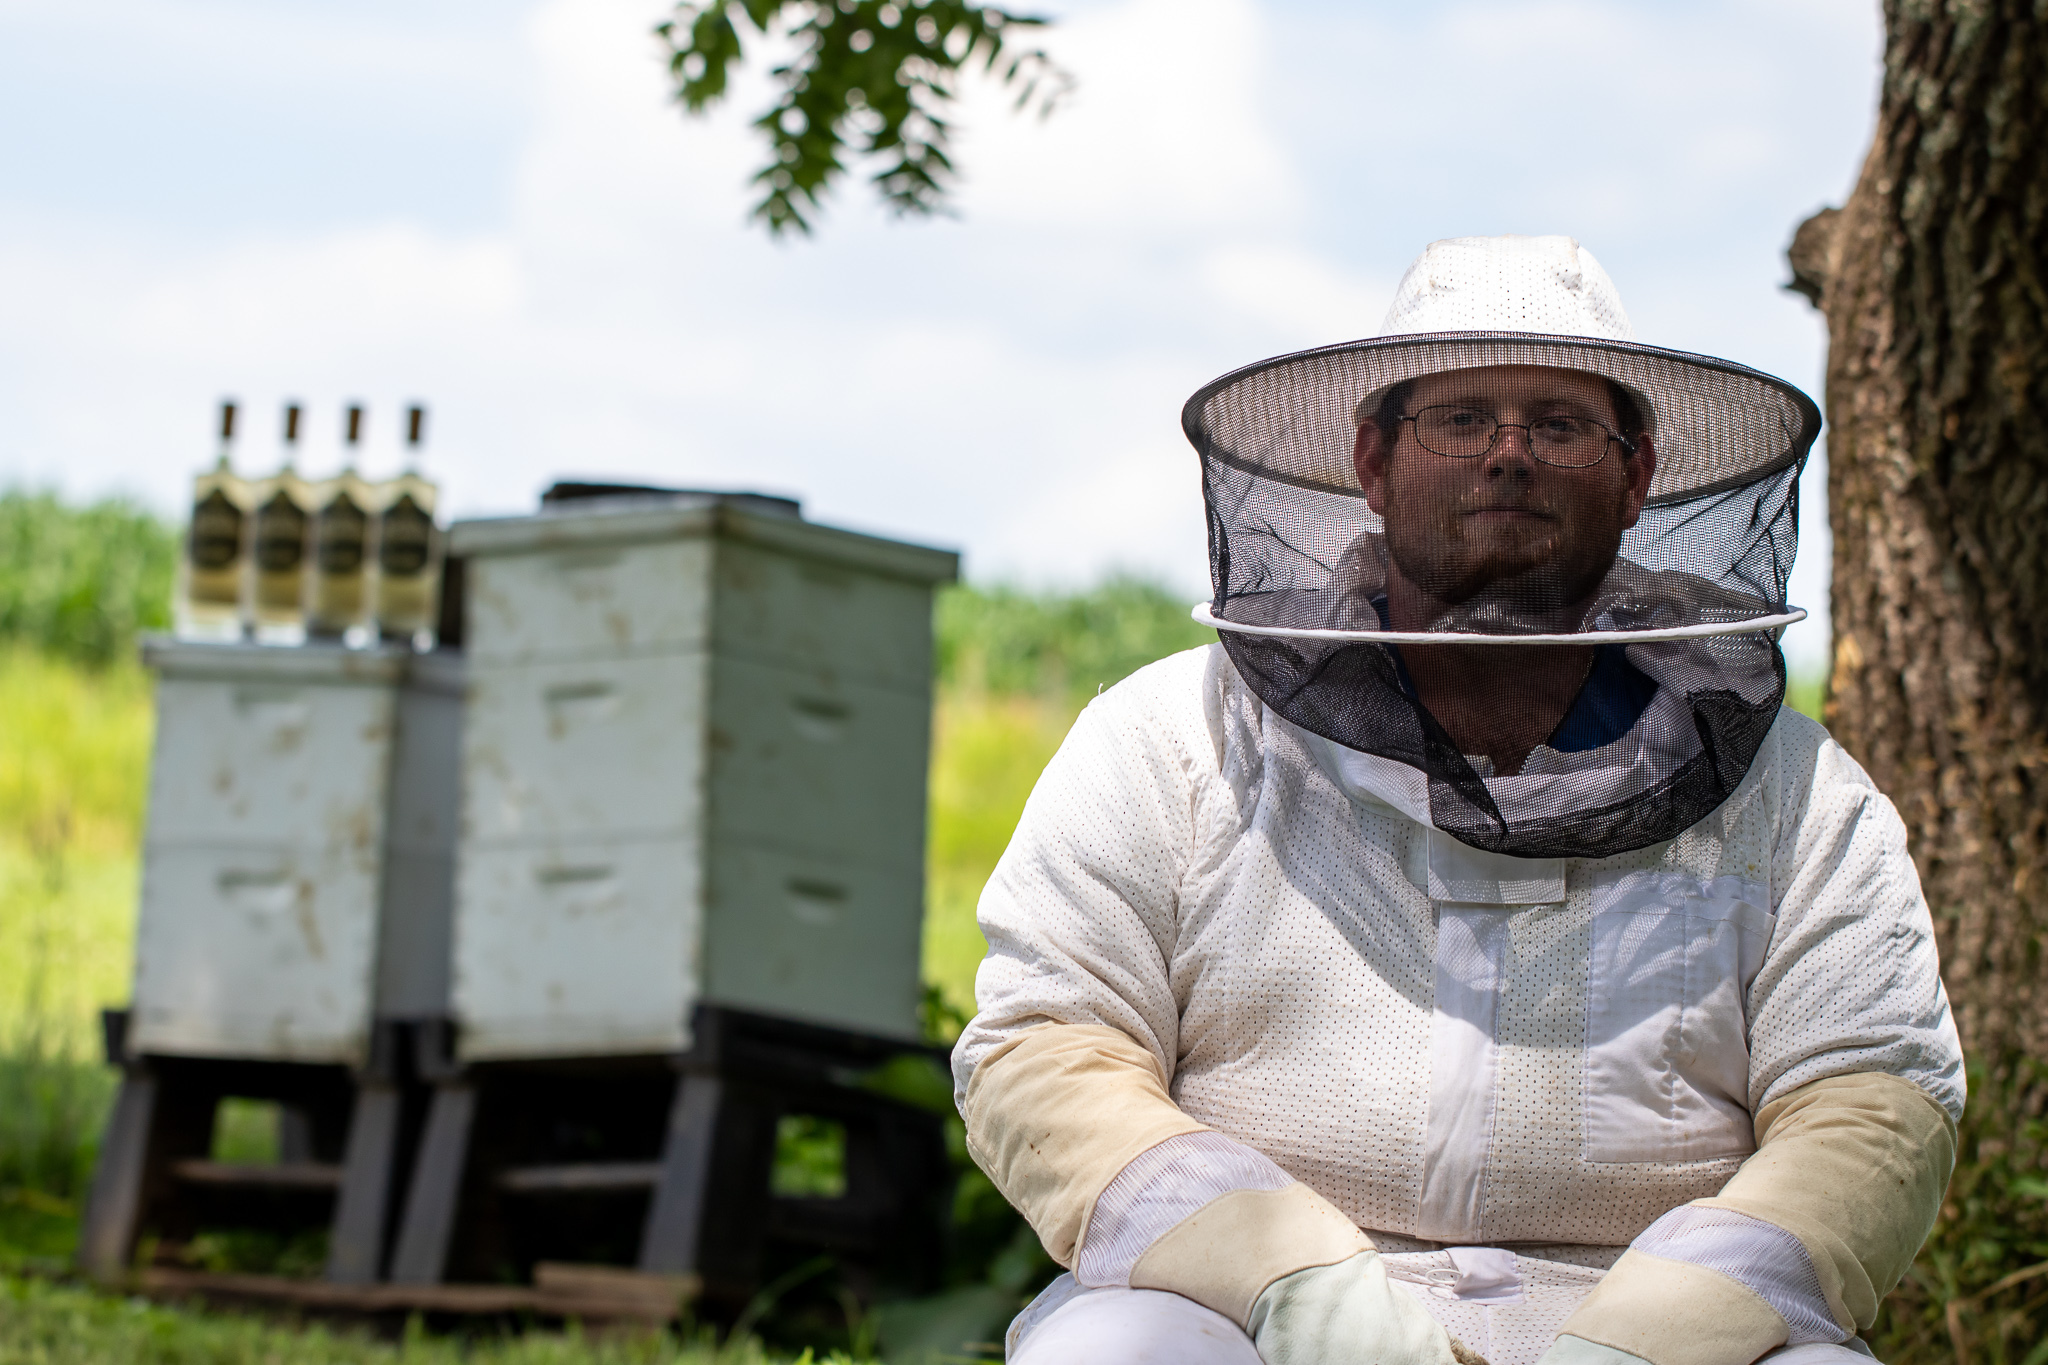 Jeptha Creed Beekeeper